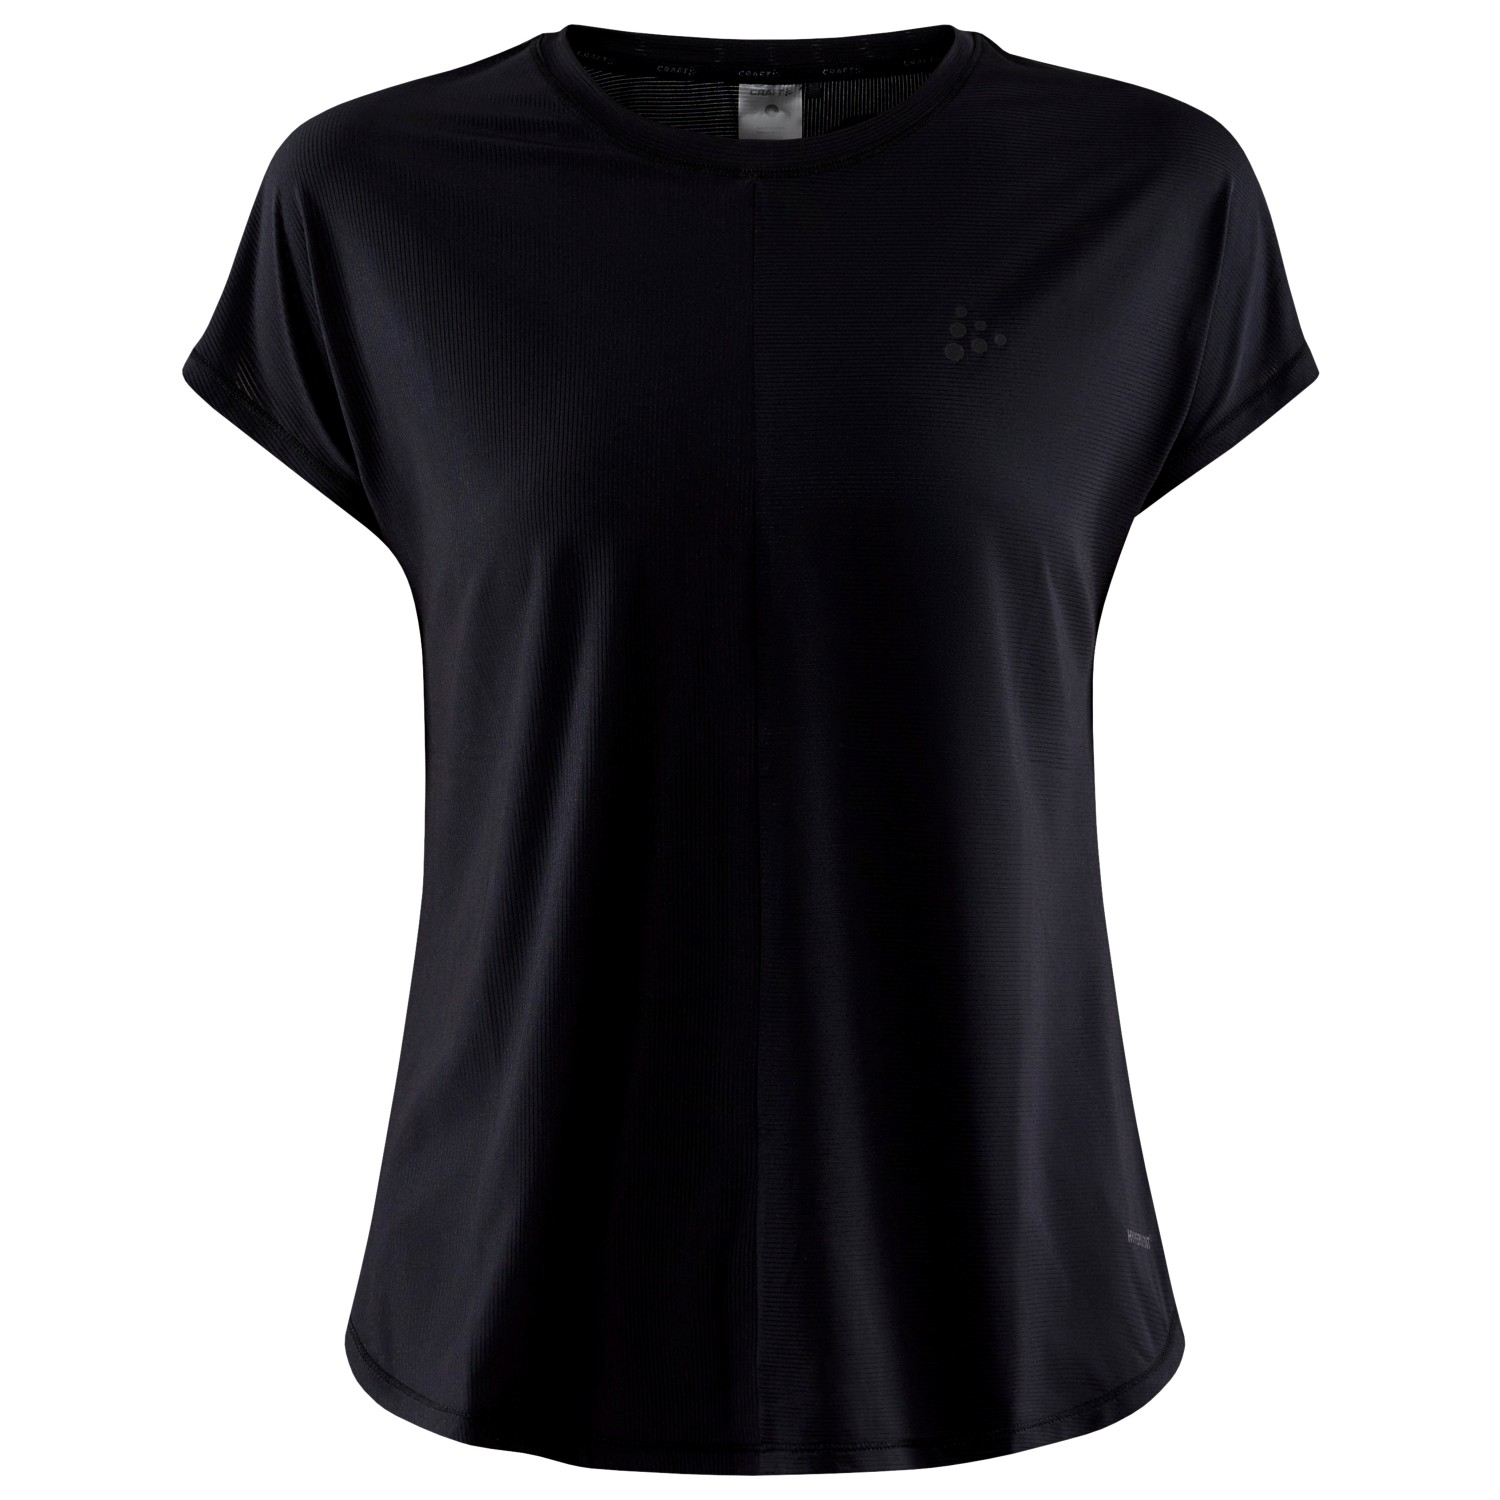 Функциональная рубашка Craft Women's Core Essence S/S Tee, черный